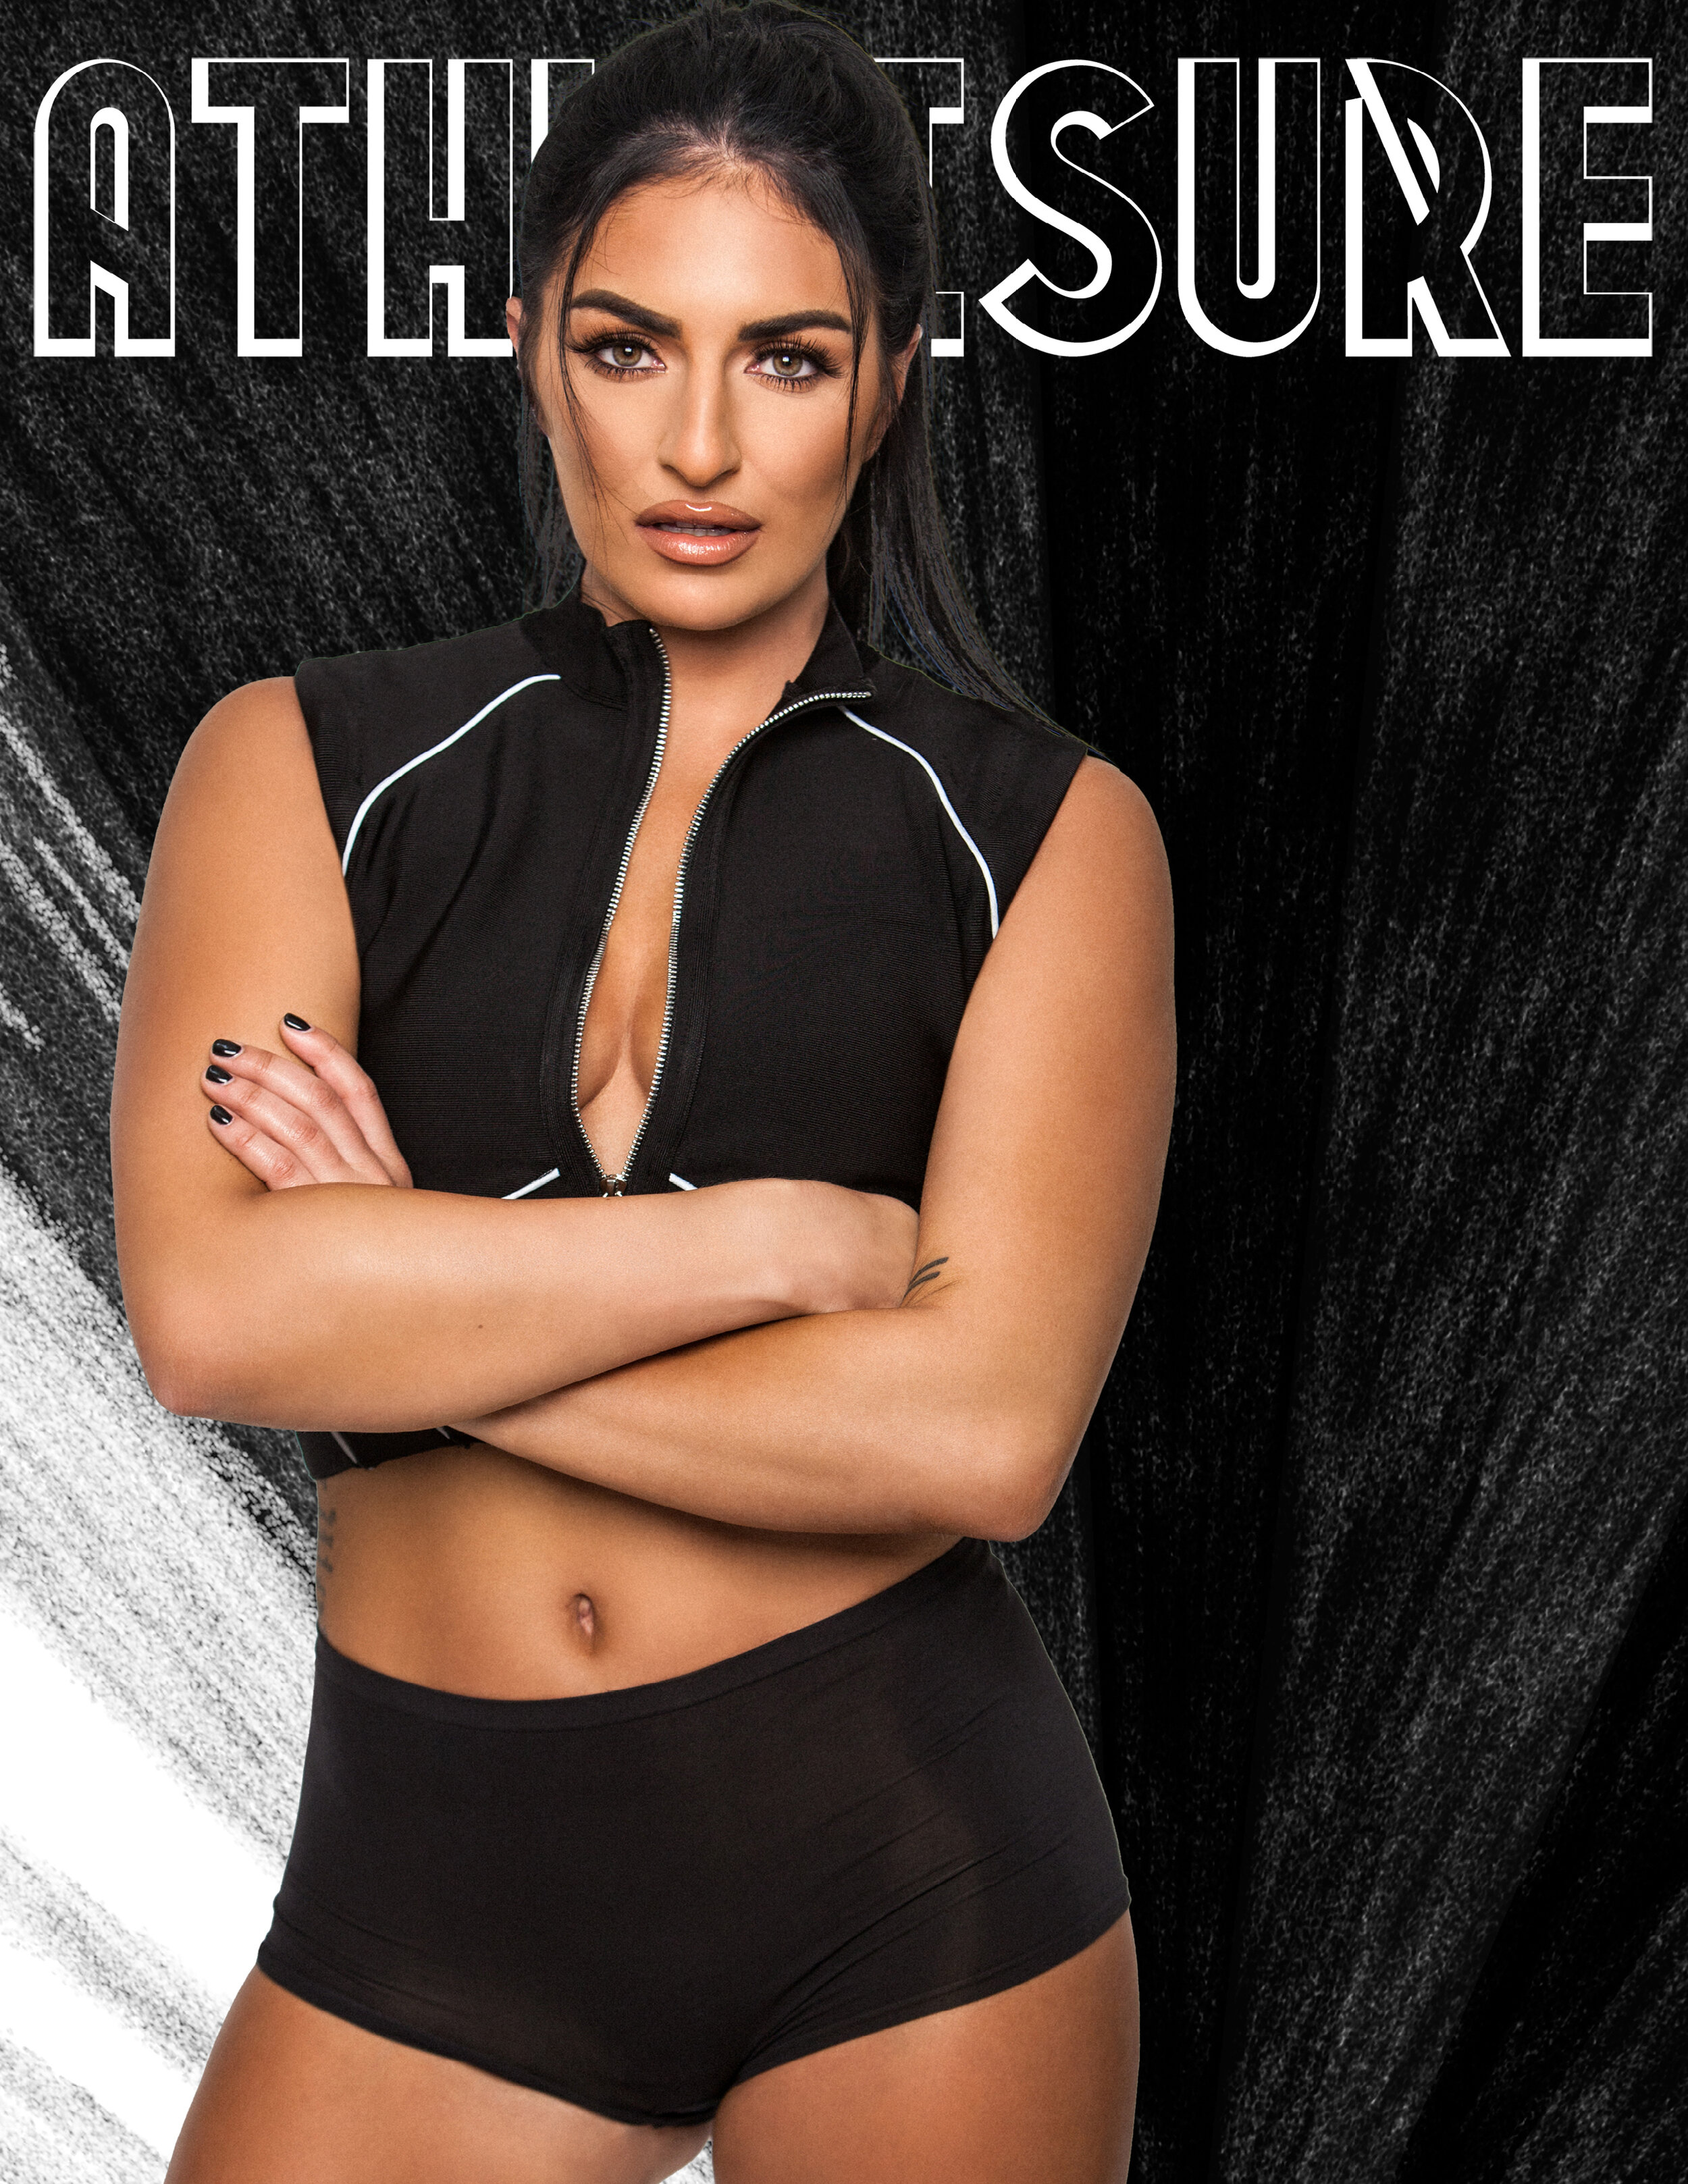 Daria Berenato/WWE +E! Total Divas' Sonya Deville